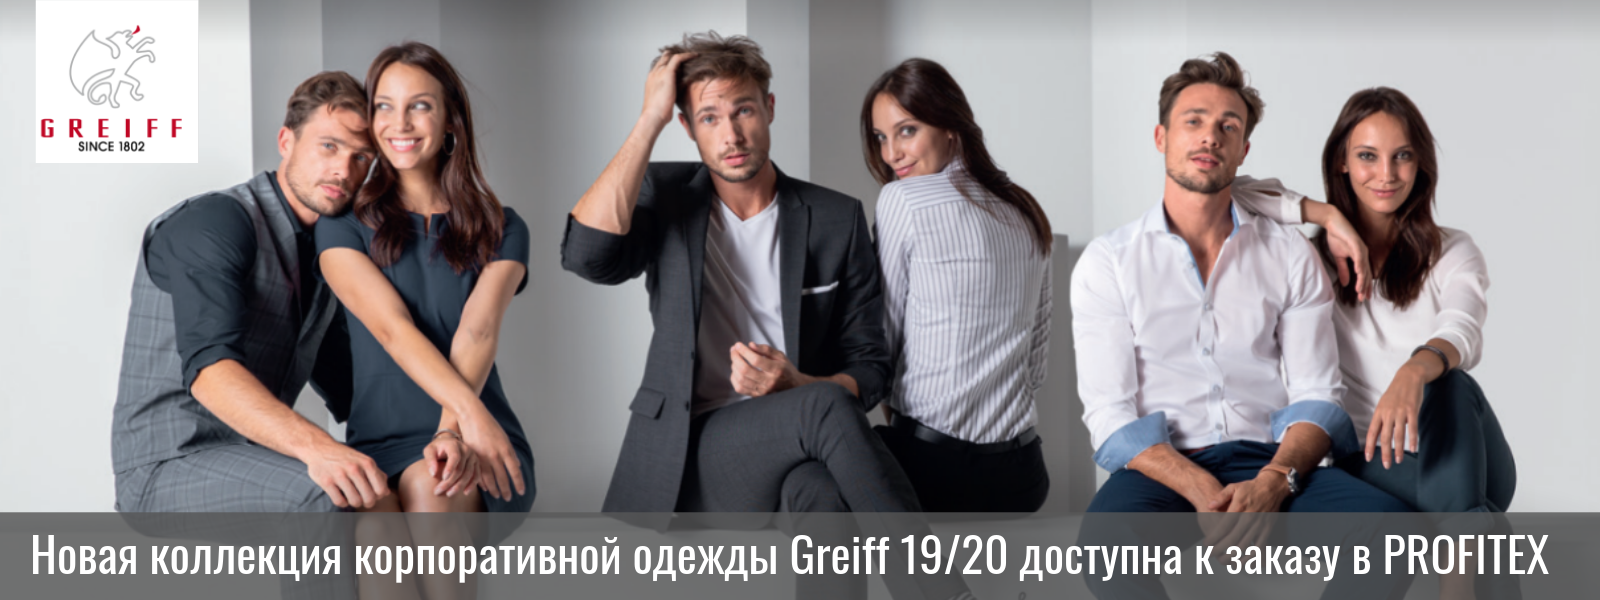 Нова_колекція_корпоративного_одягу_Greif_доступна_до_замовлення_в_PROFITEX